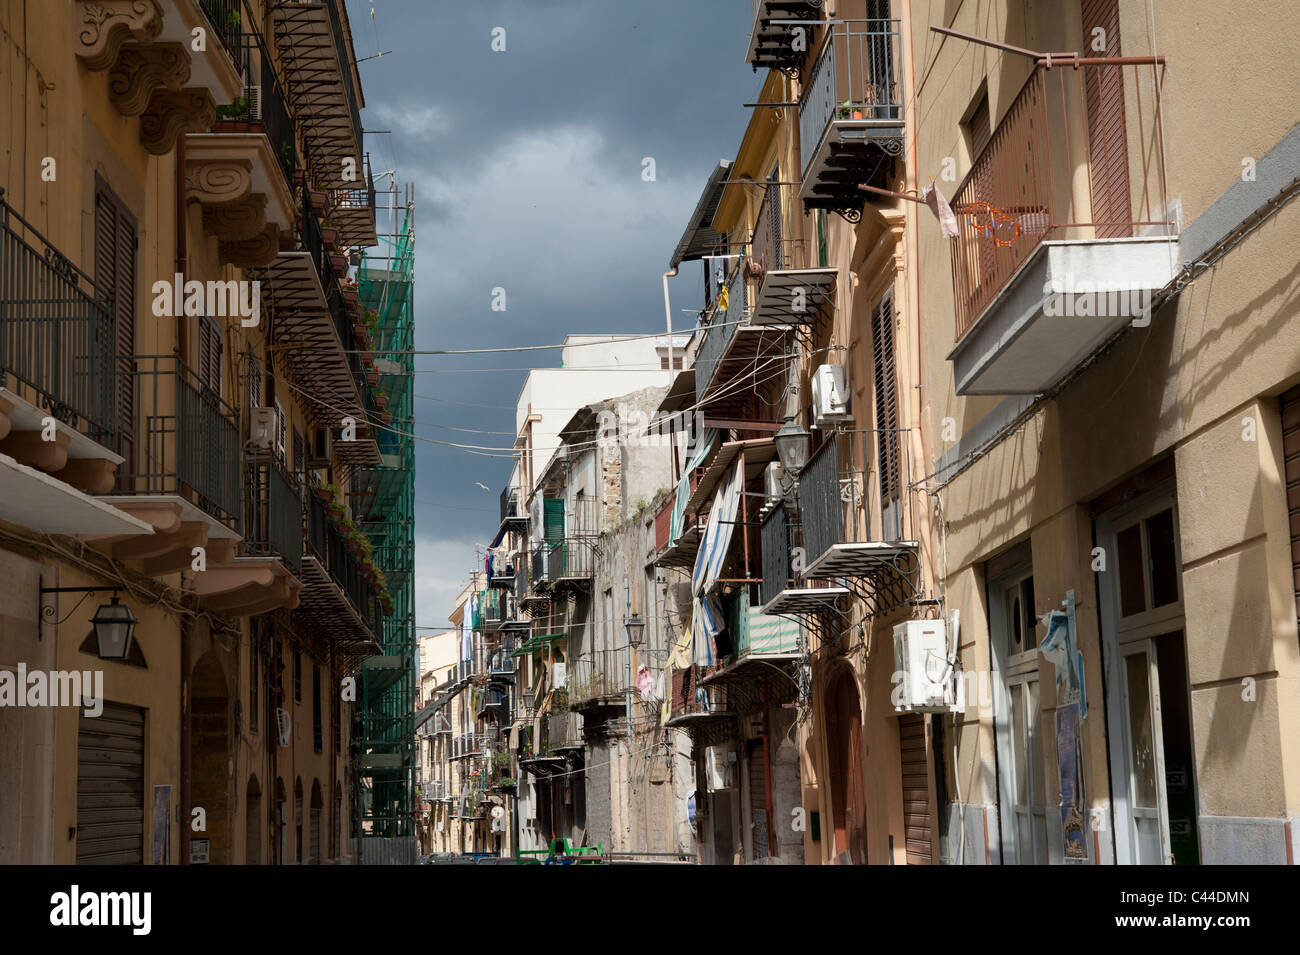 Vue sur rue sur le vieux quartier de l'Albergheria, Palerme, Sicile, Italie Banque D'Images